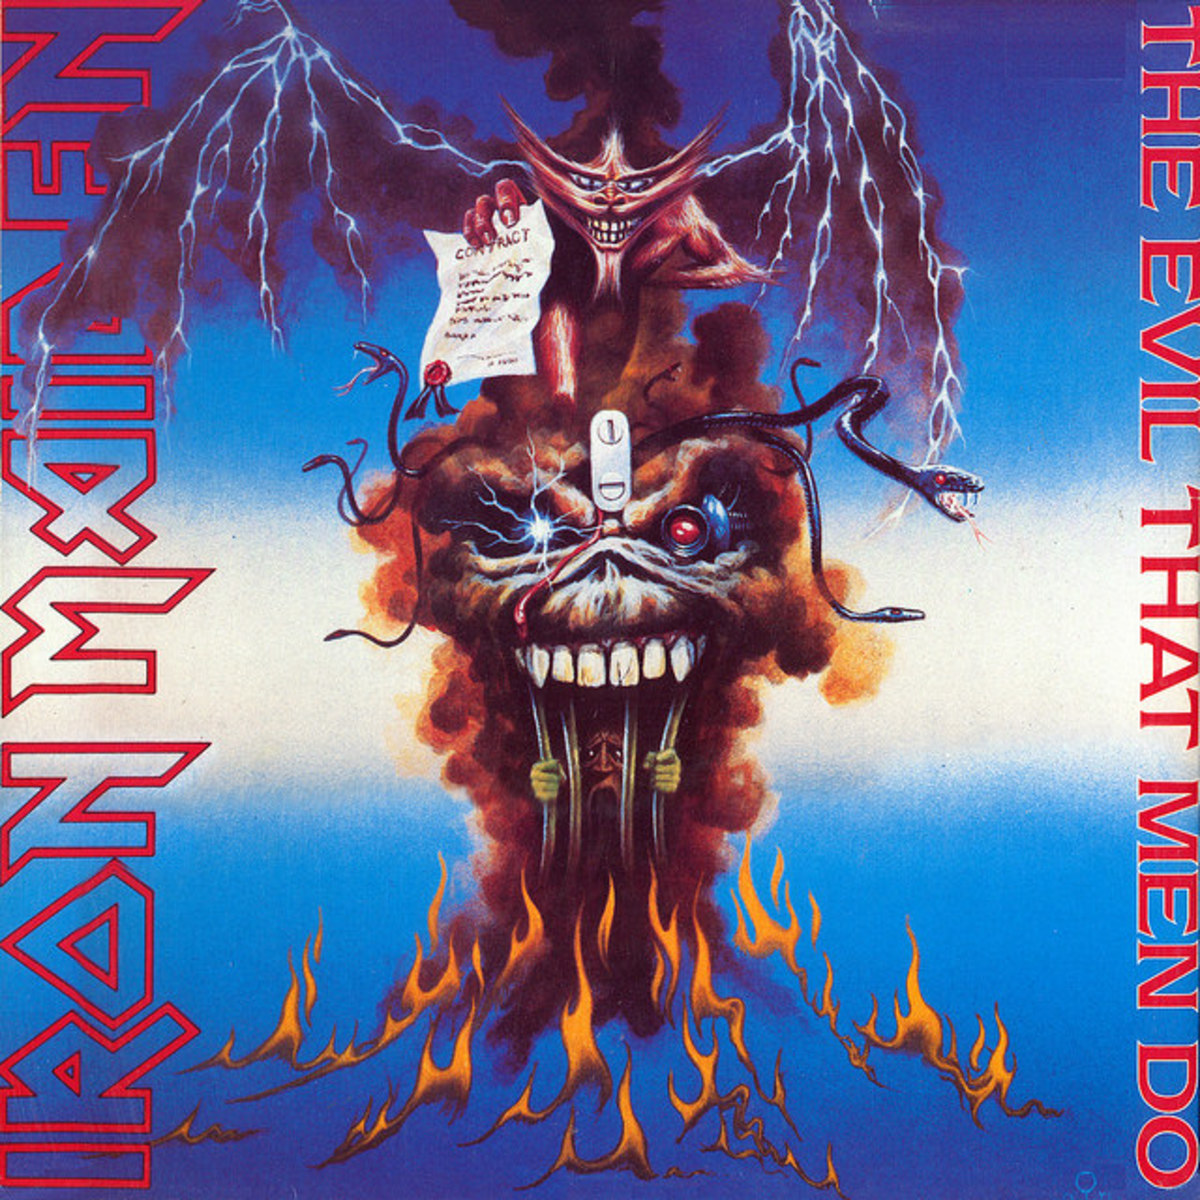 Iron Maiden "The Evil That Men Do" EMI 12EMS 6412" Vinyl Single UK Pressing (1988) Cover Art by Derek Riggs